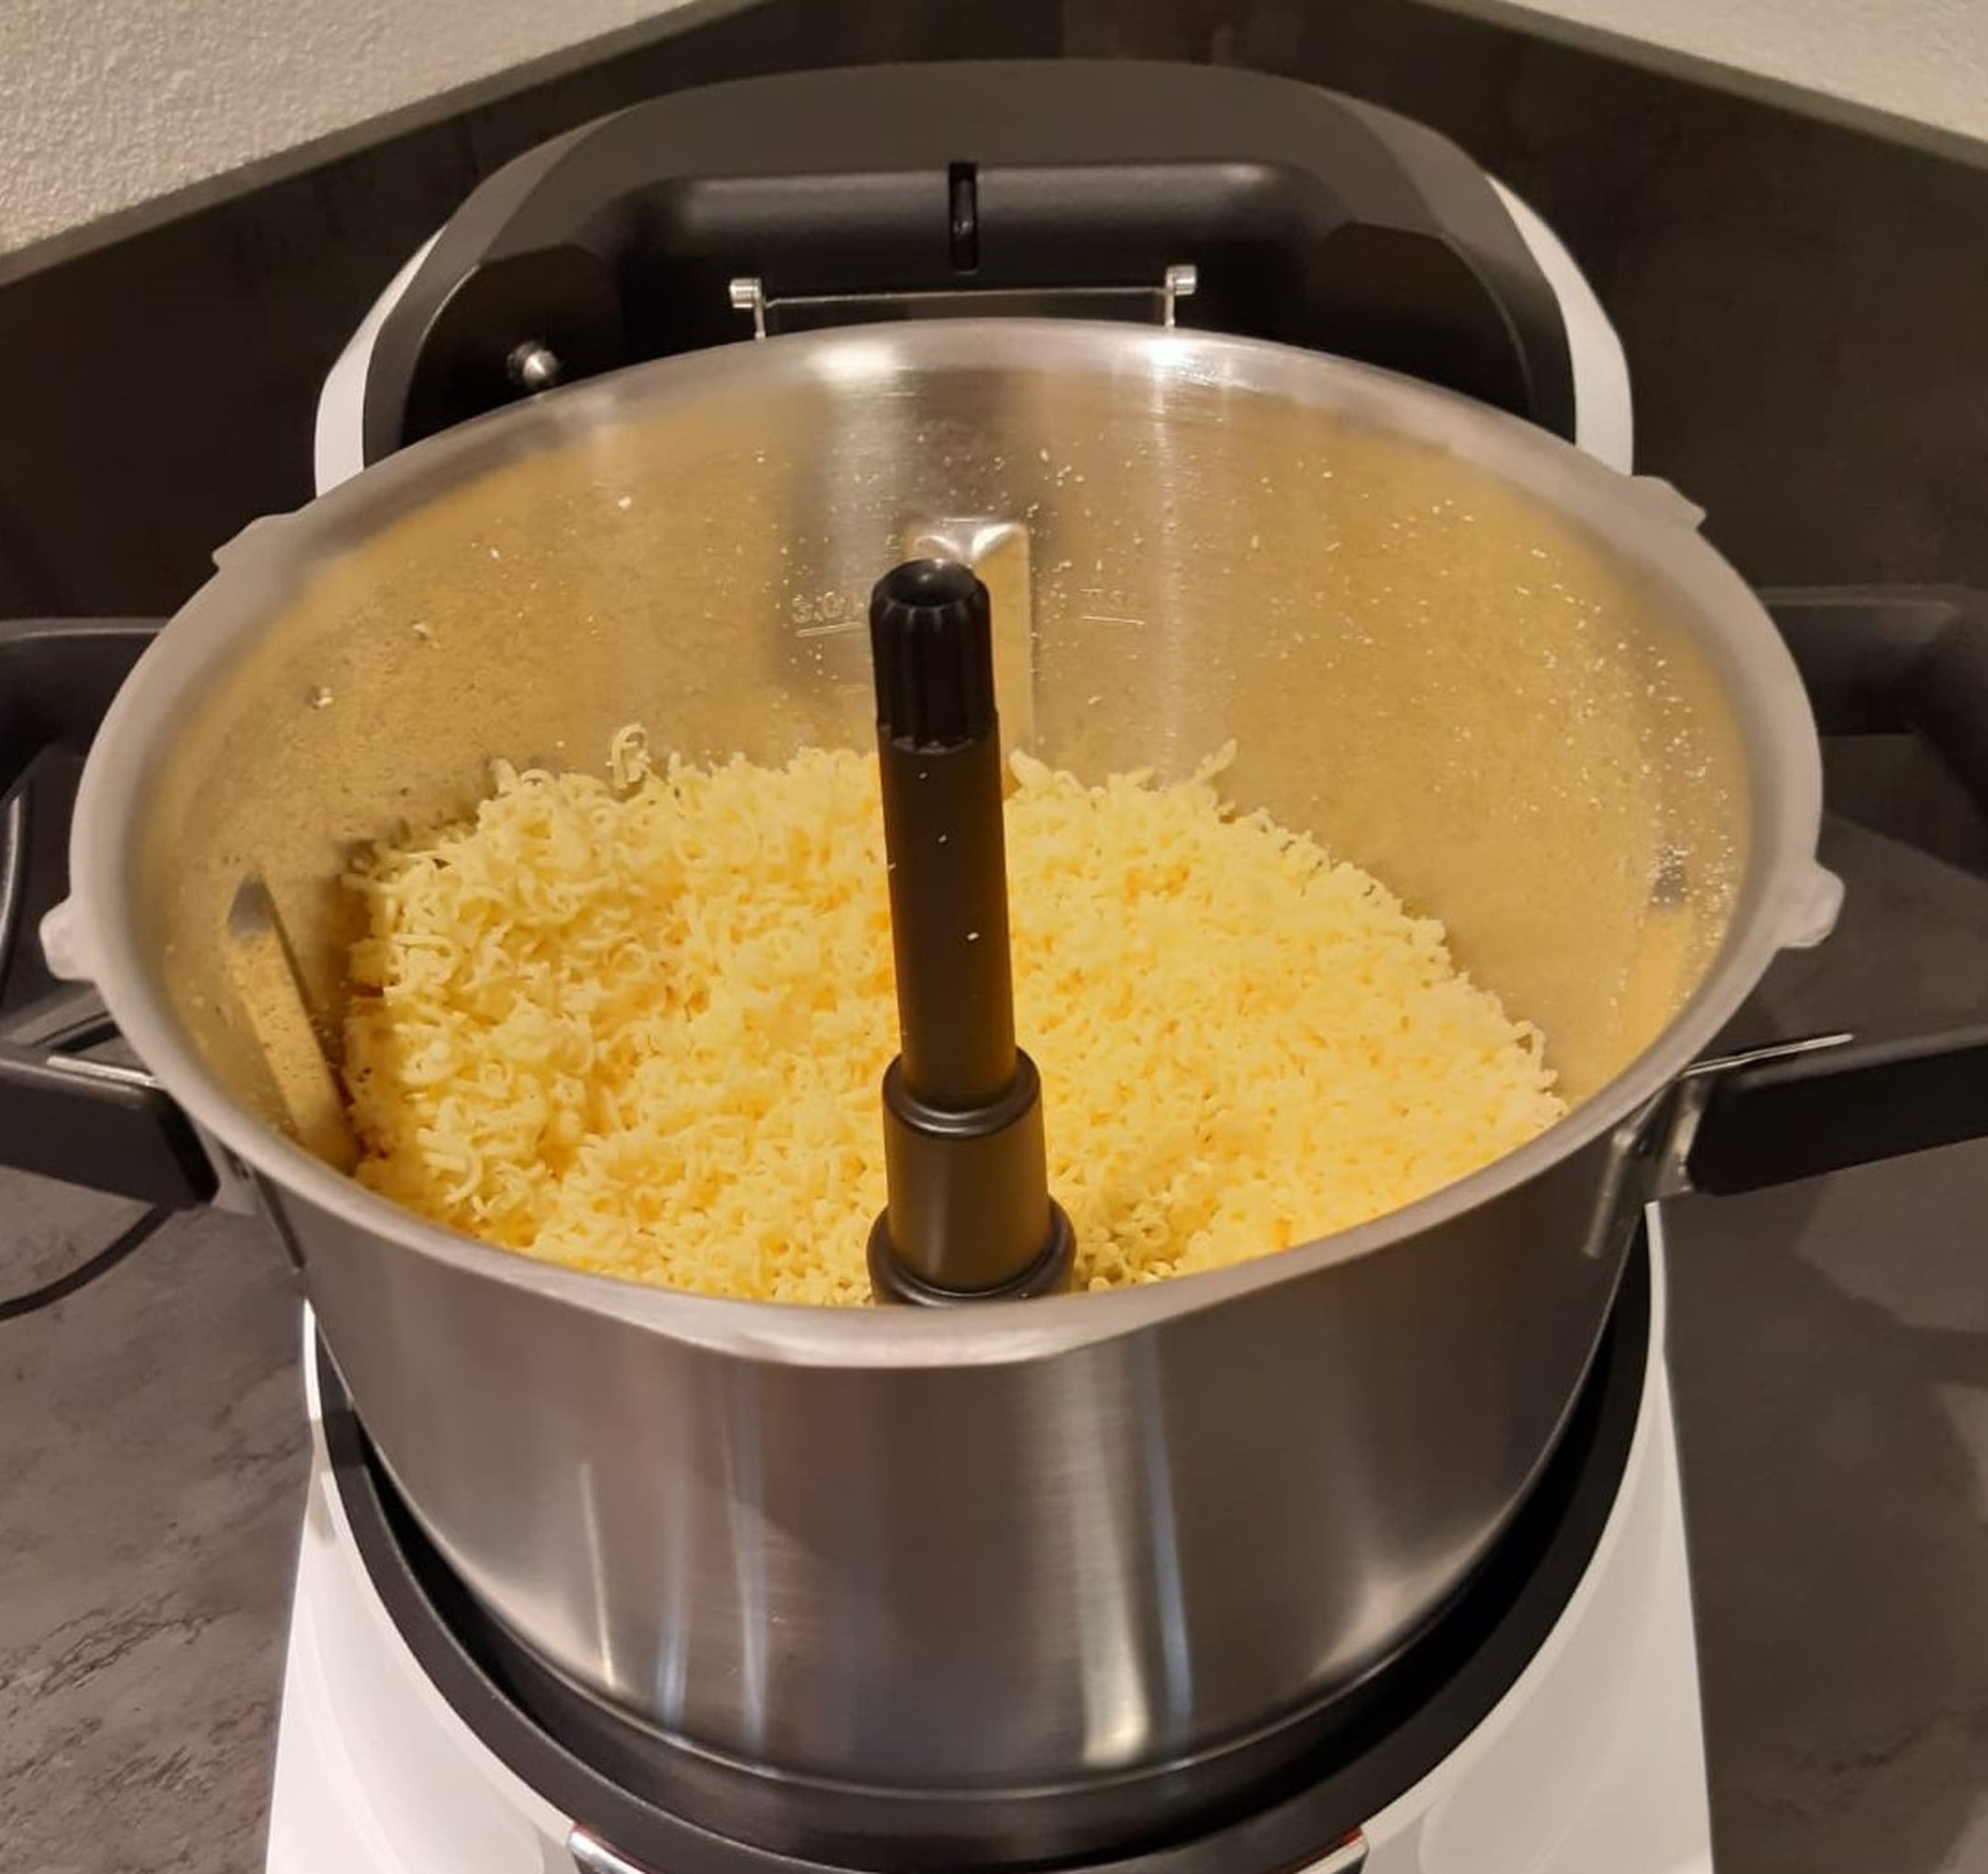 Käse mit der feinen Cookit Wenderaspelscheibe – eingesetzt im Zerkleinerungsaufsatz – bei geschlossenem Deckel auf Stufe 3 (Wenderaspelscheibe| Stufe 3 | 30 Sek.) raspeln und in eine Schüssel umfüllen.